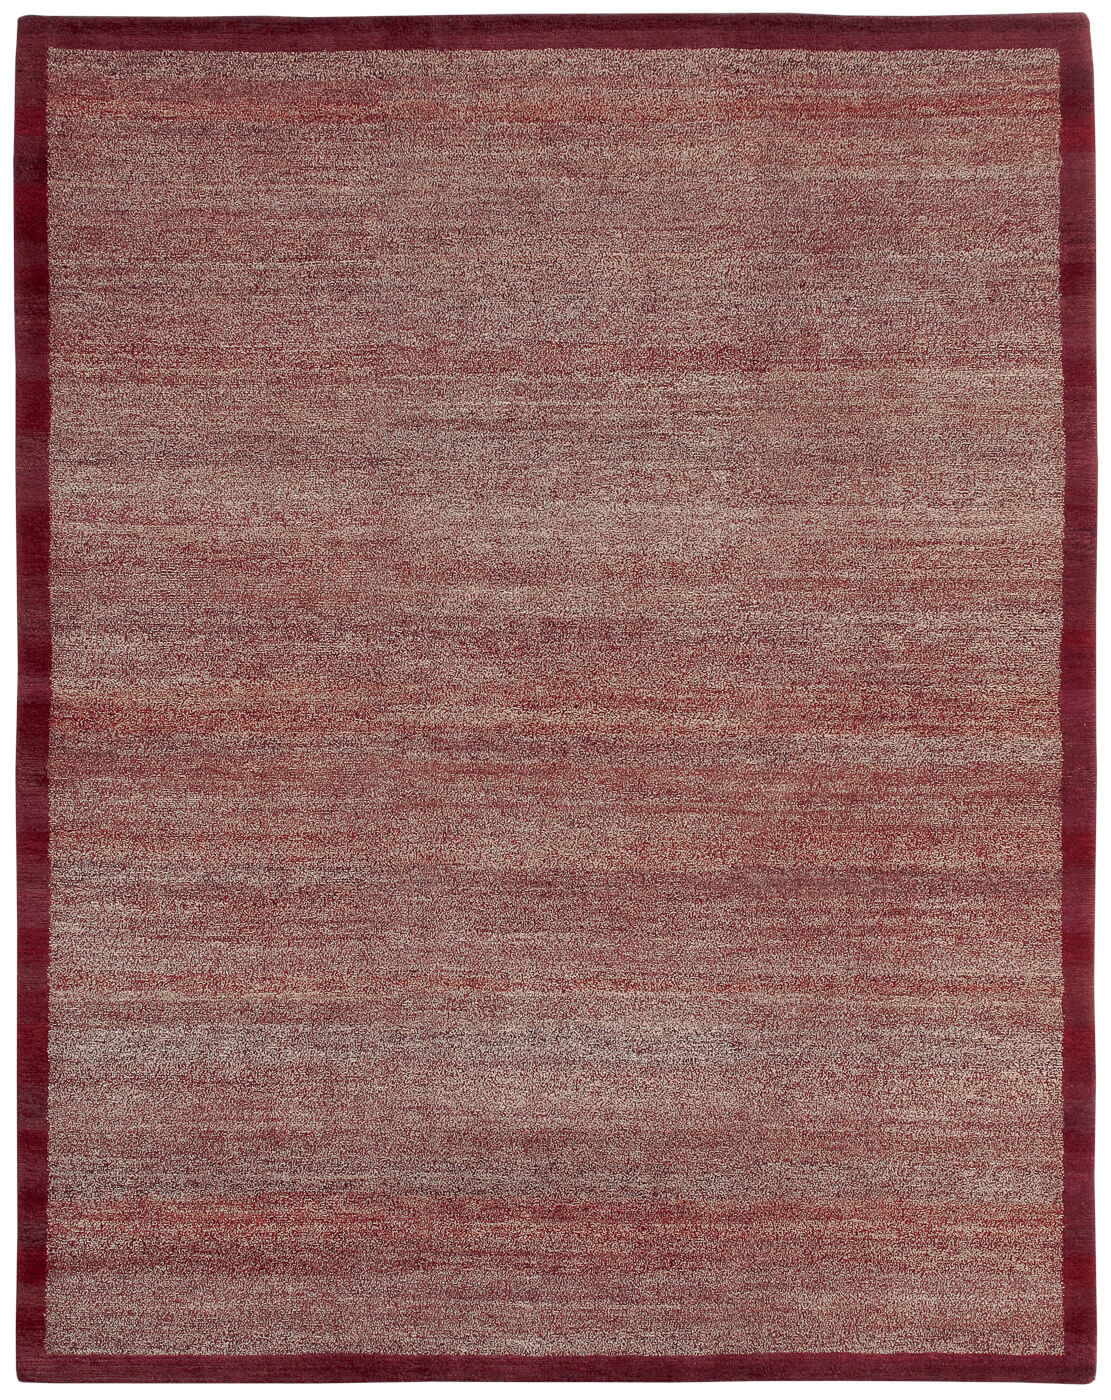 Border Dark Red Luxury Hand-woven Rug ☞ Size: 300 x 400 cm